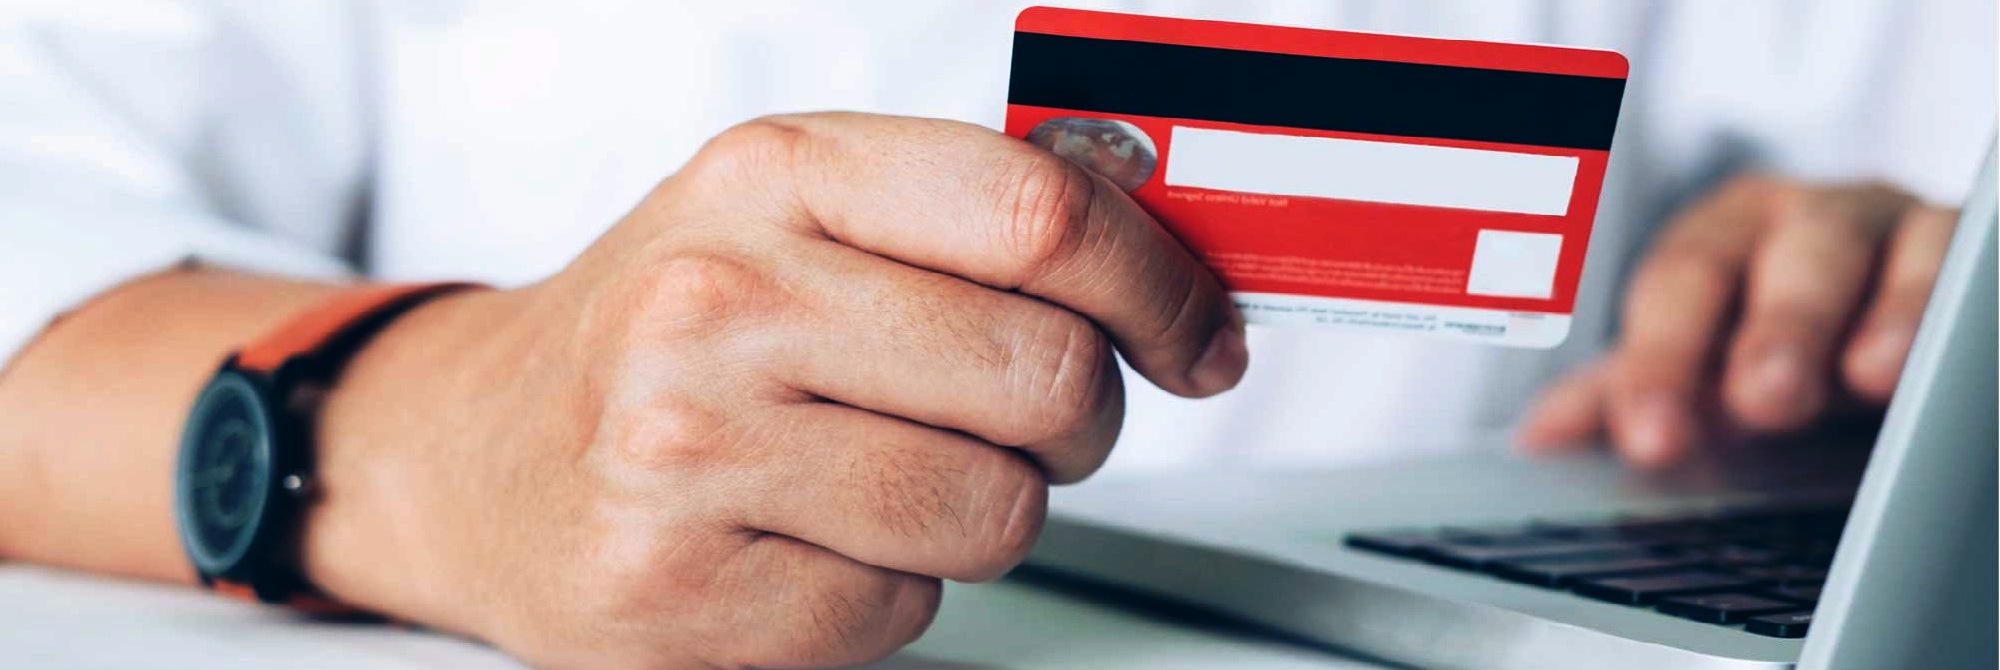 Быстрый займ как работает кредит онлайн на банковскую карту украина без звонка